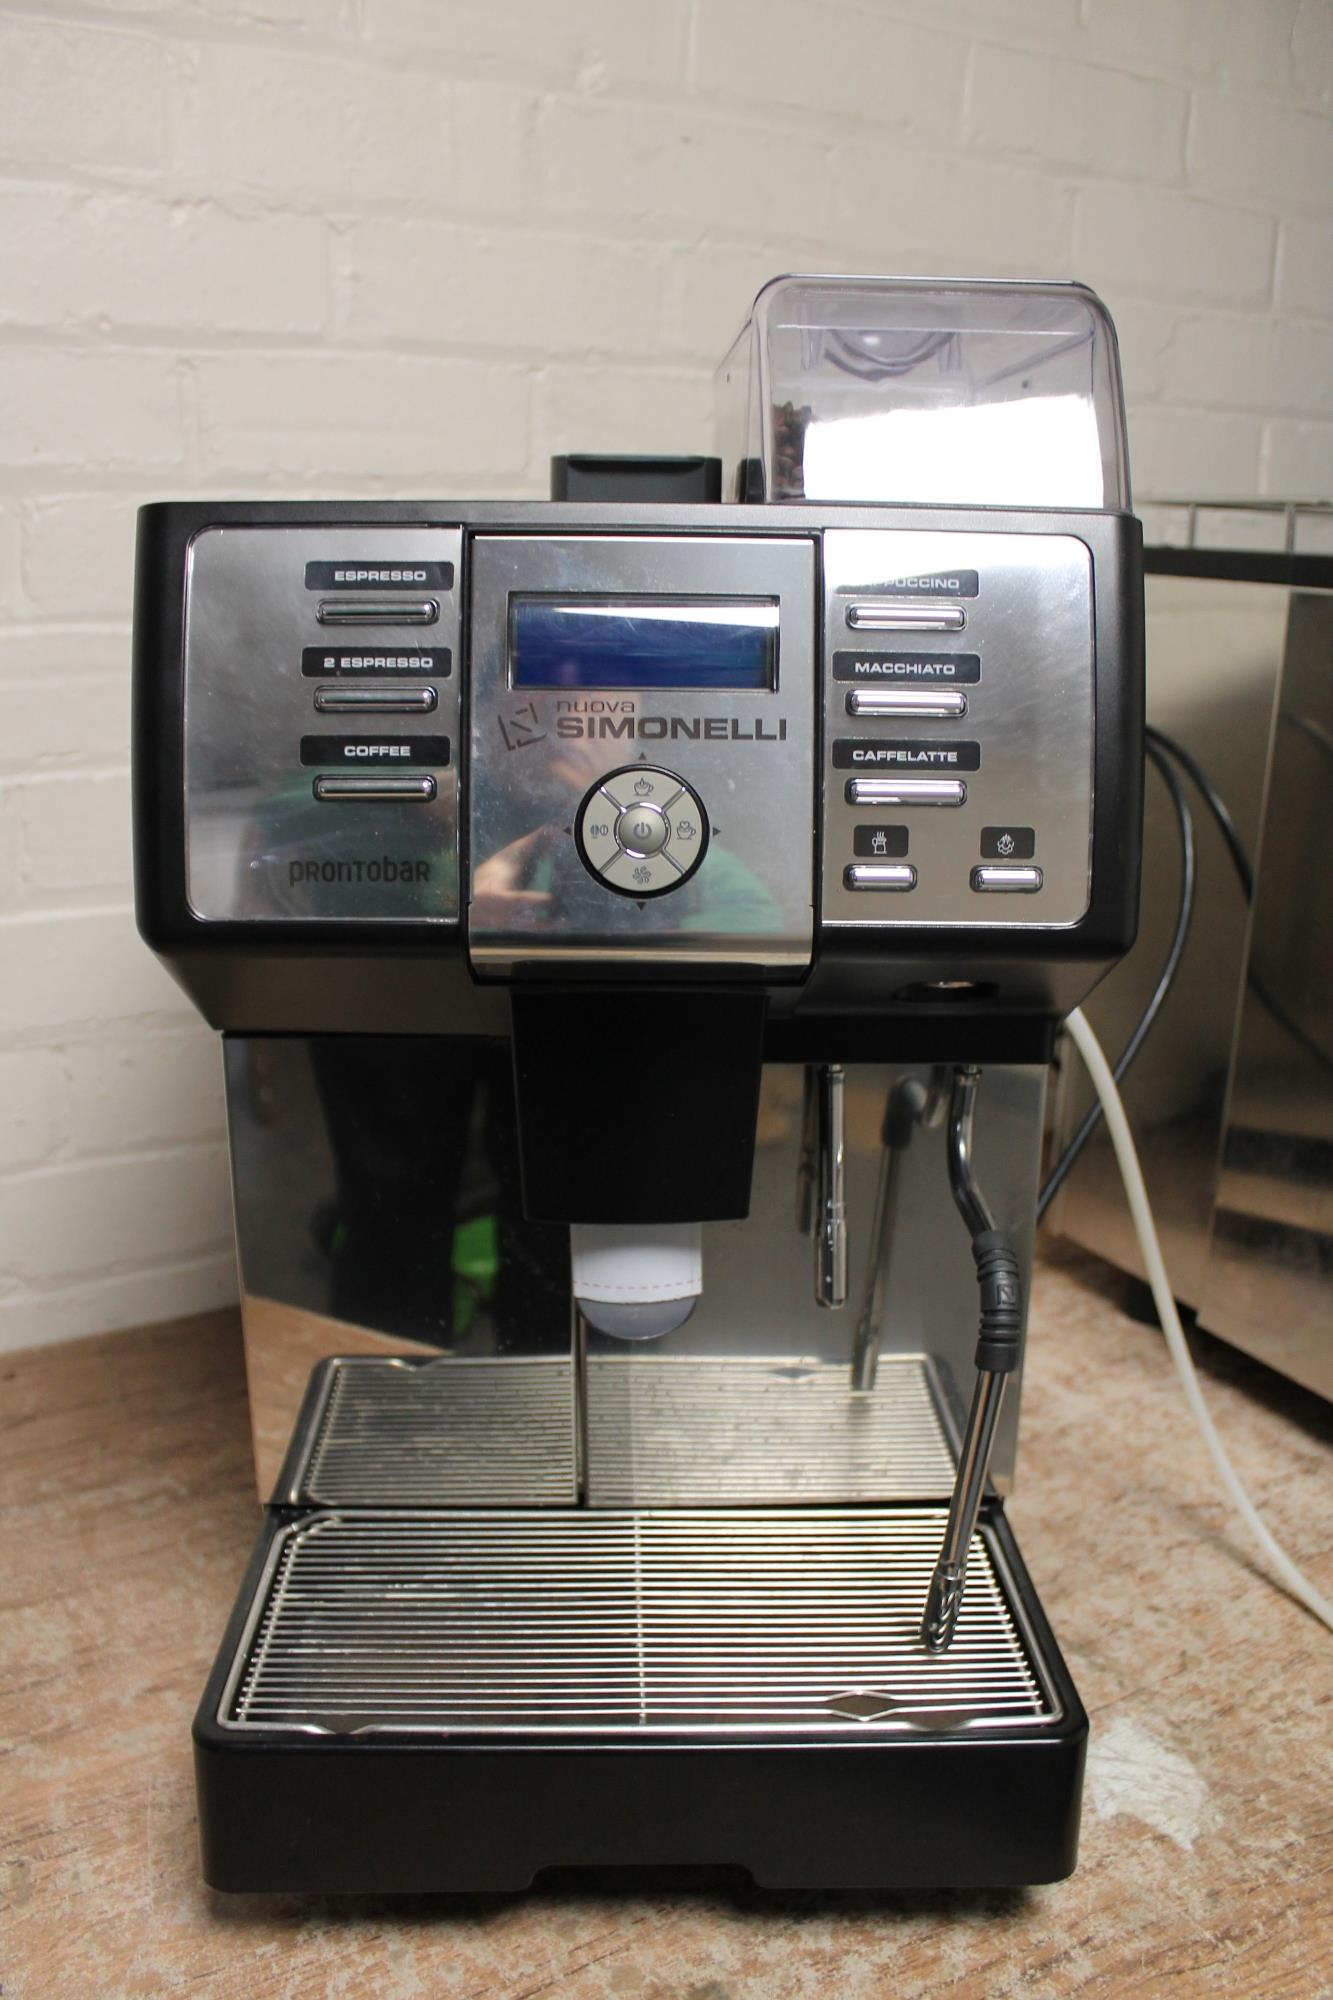 A commercial Nuova Simonelli coffee machine